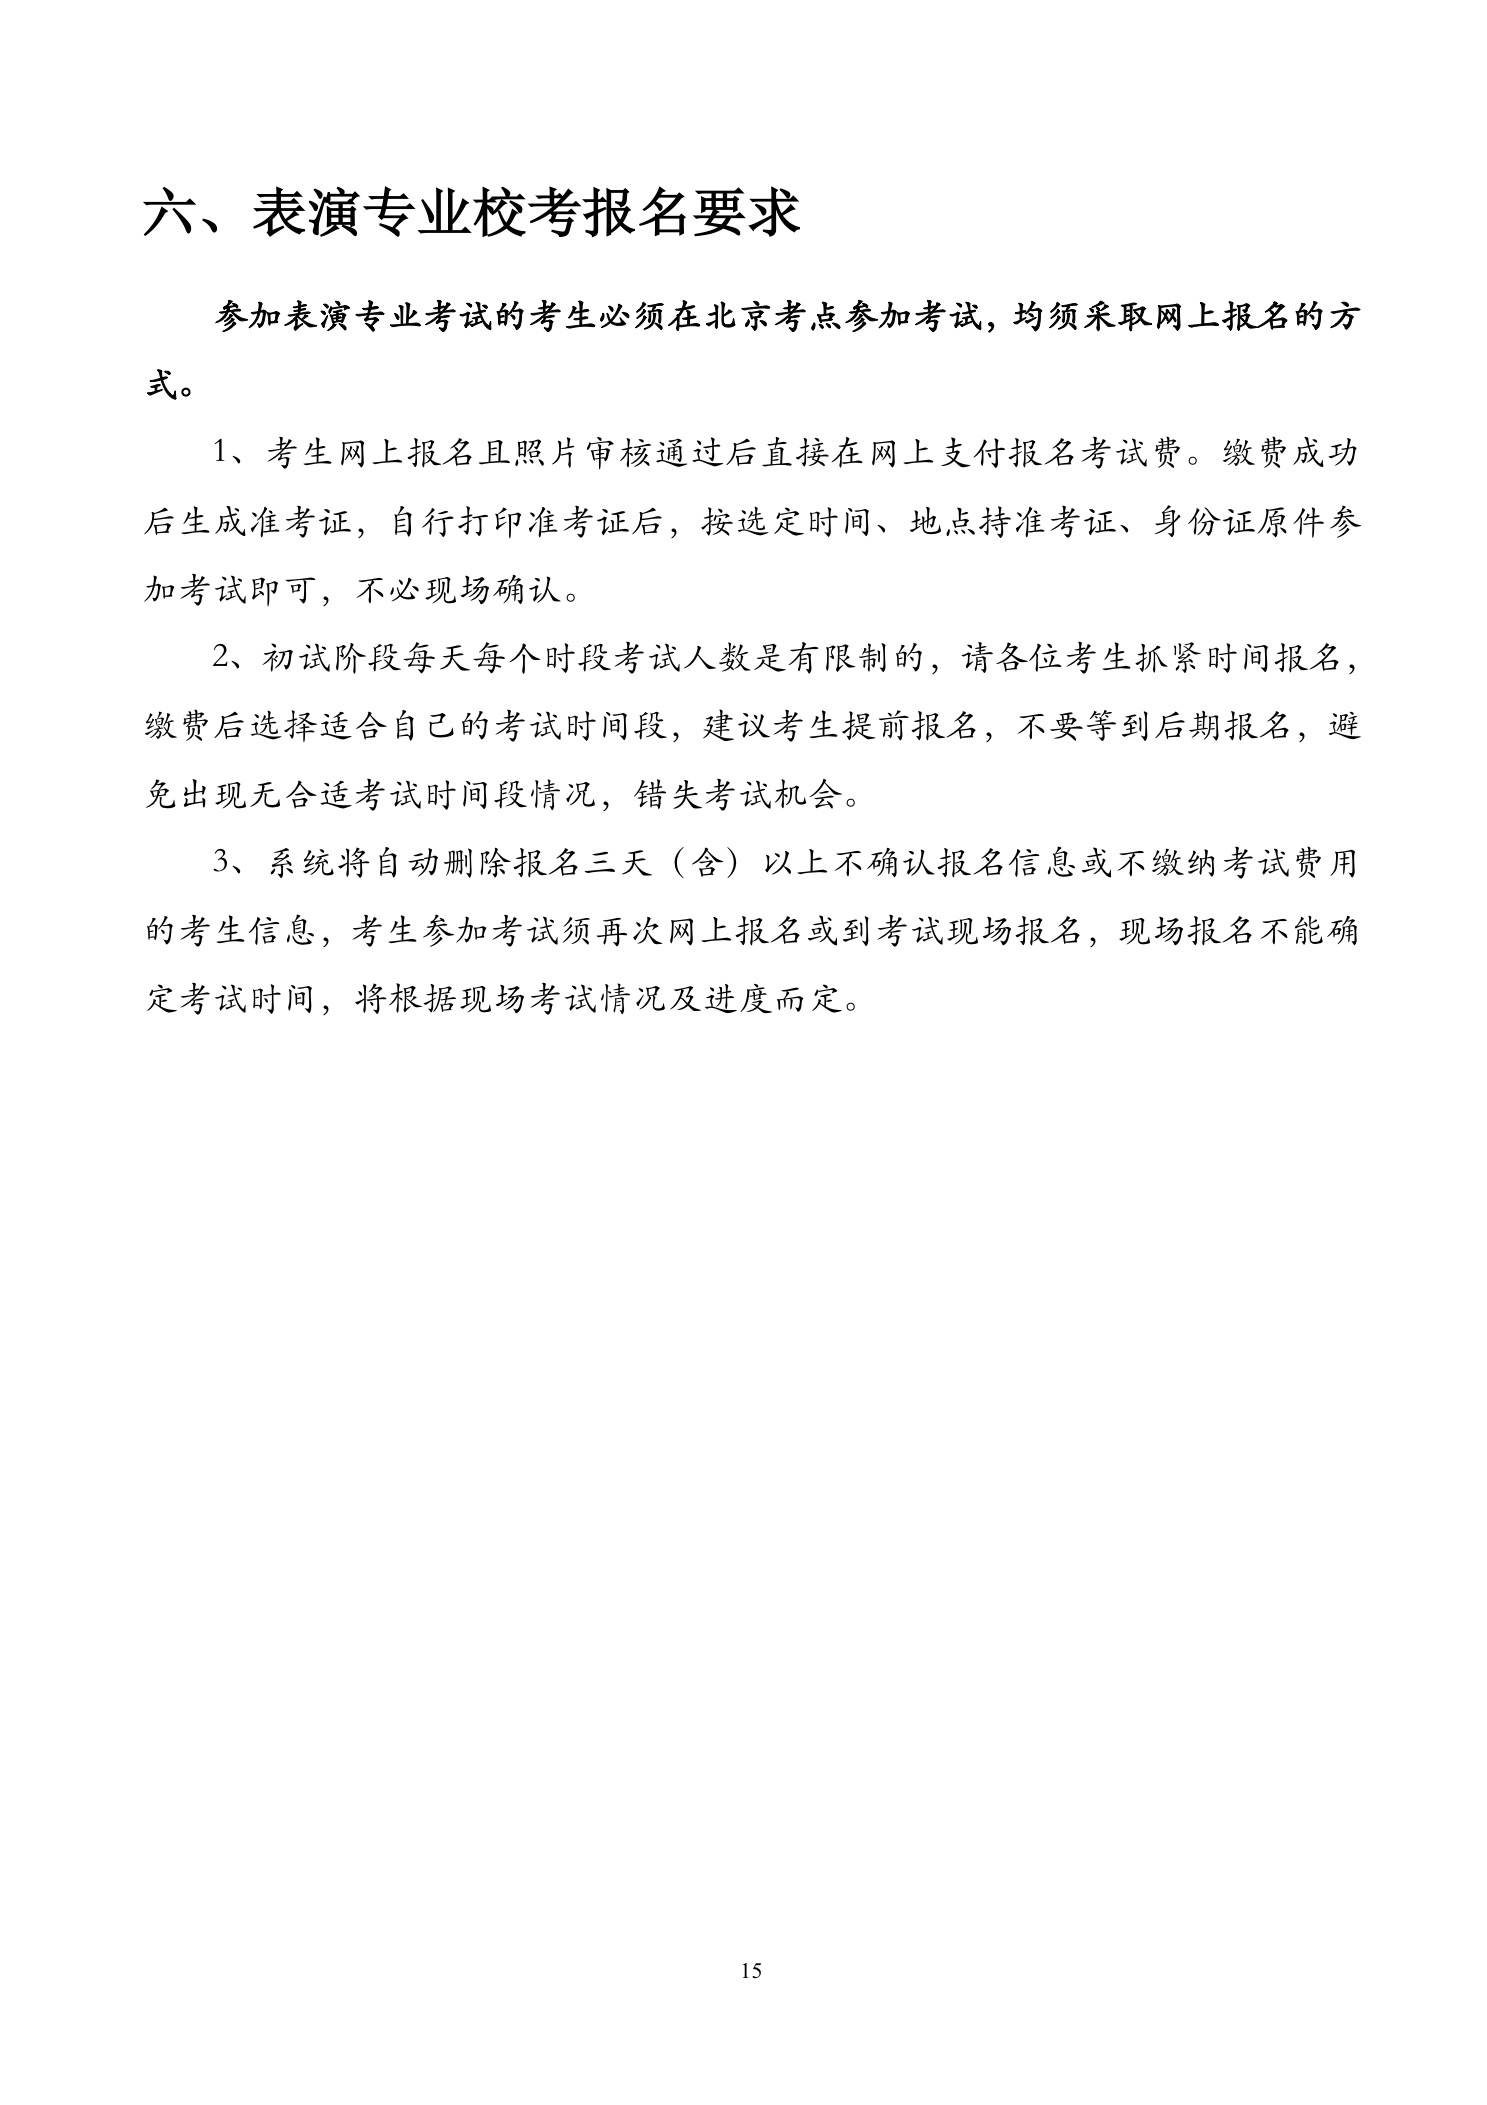 北京联合大学2018年艺术类招生简章20180103-page15 2.jpeg